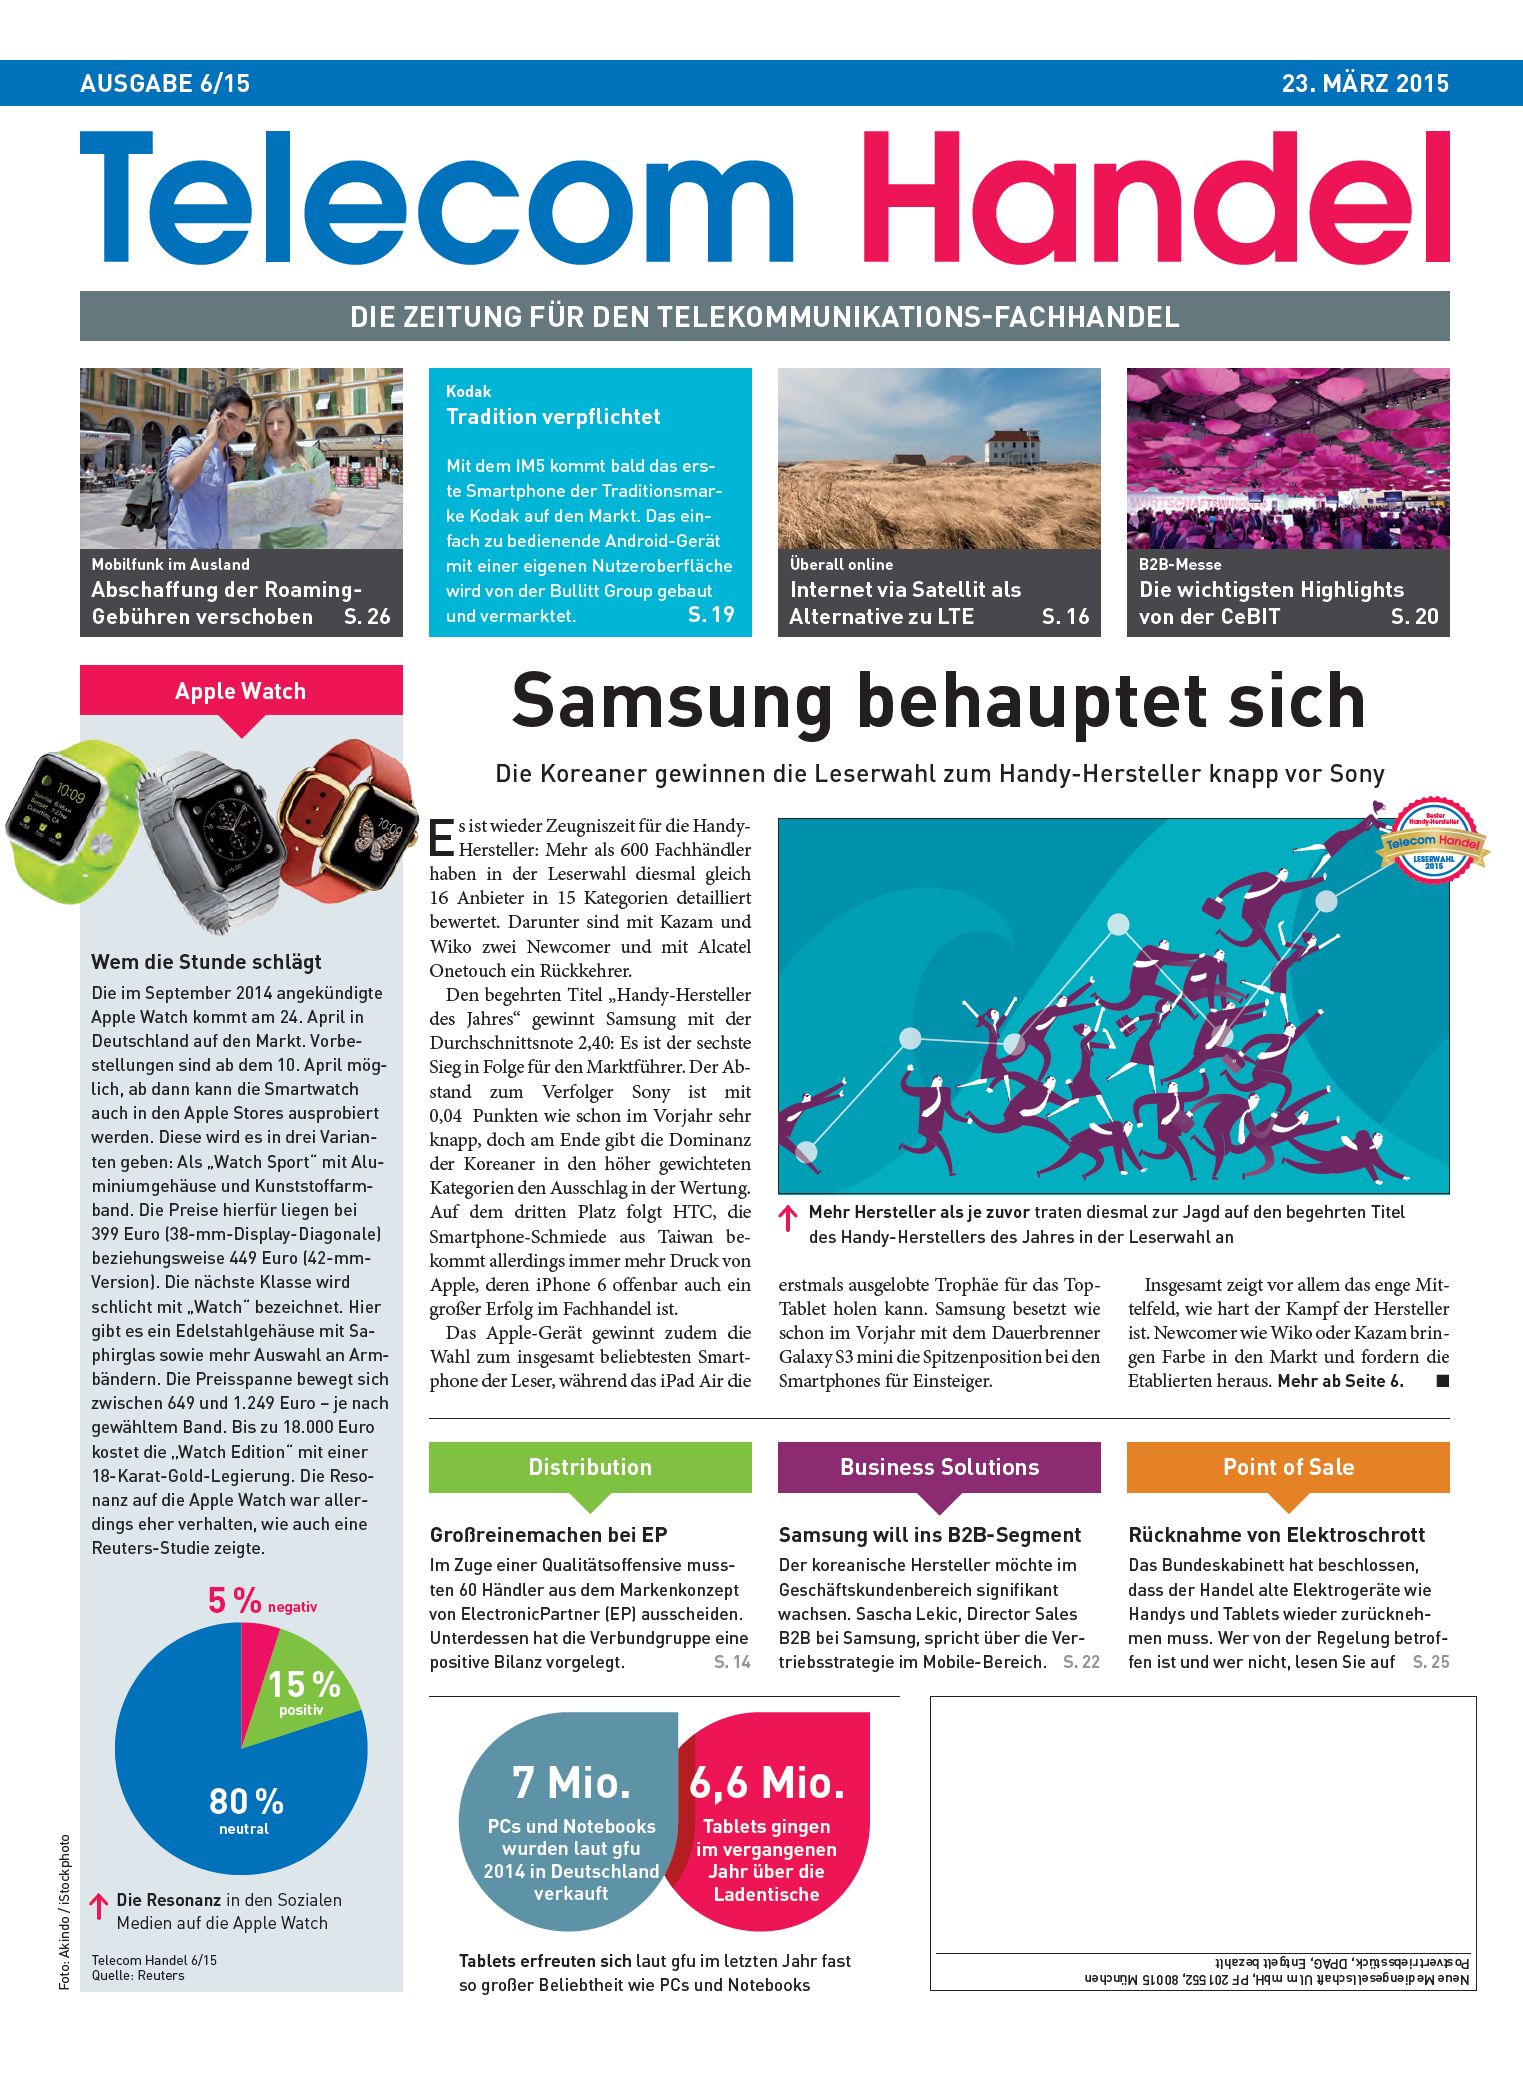 Telecom Handel Ausgabe 06/2015